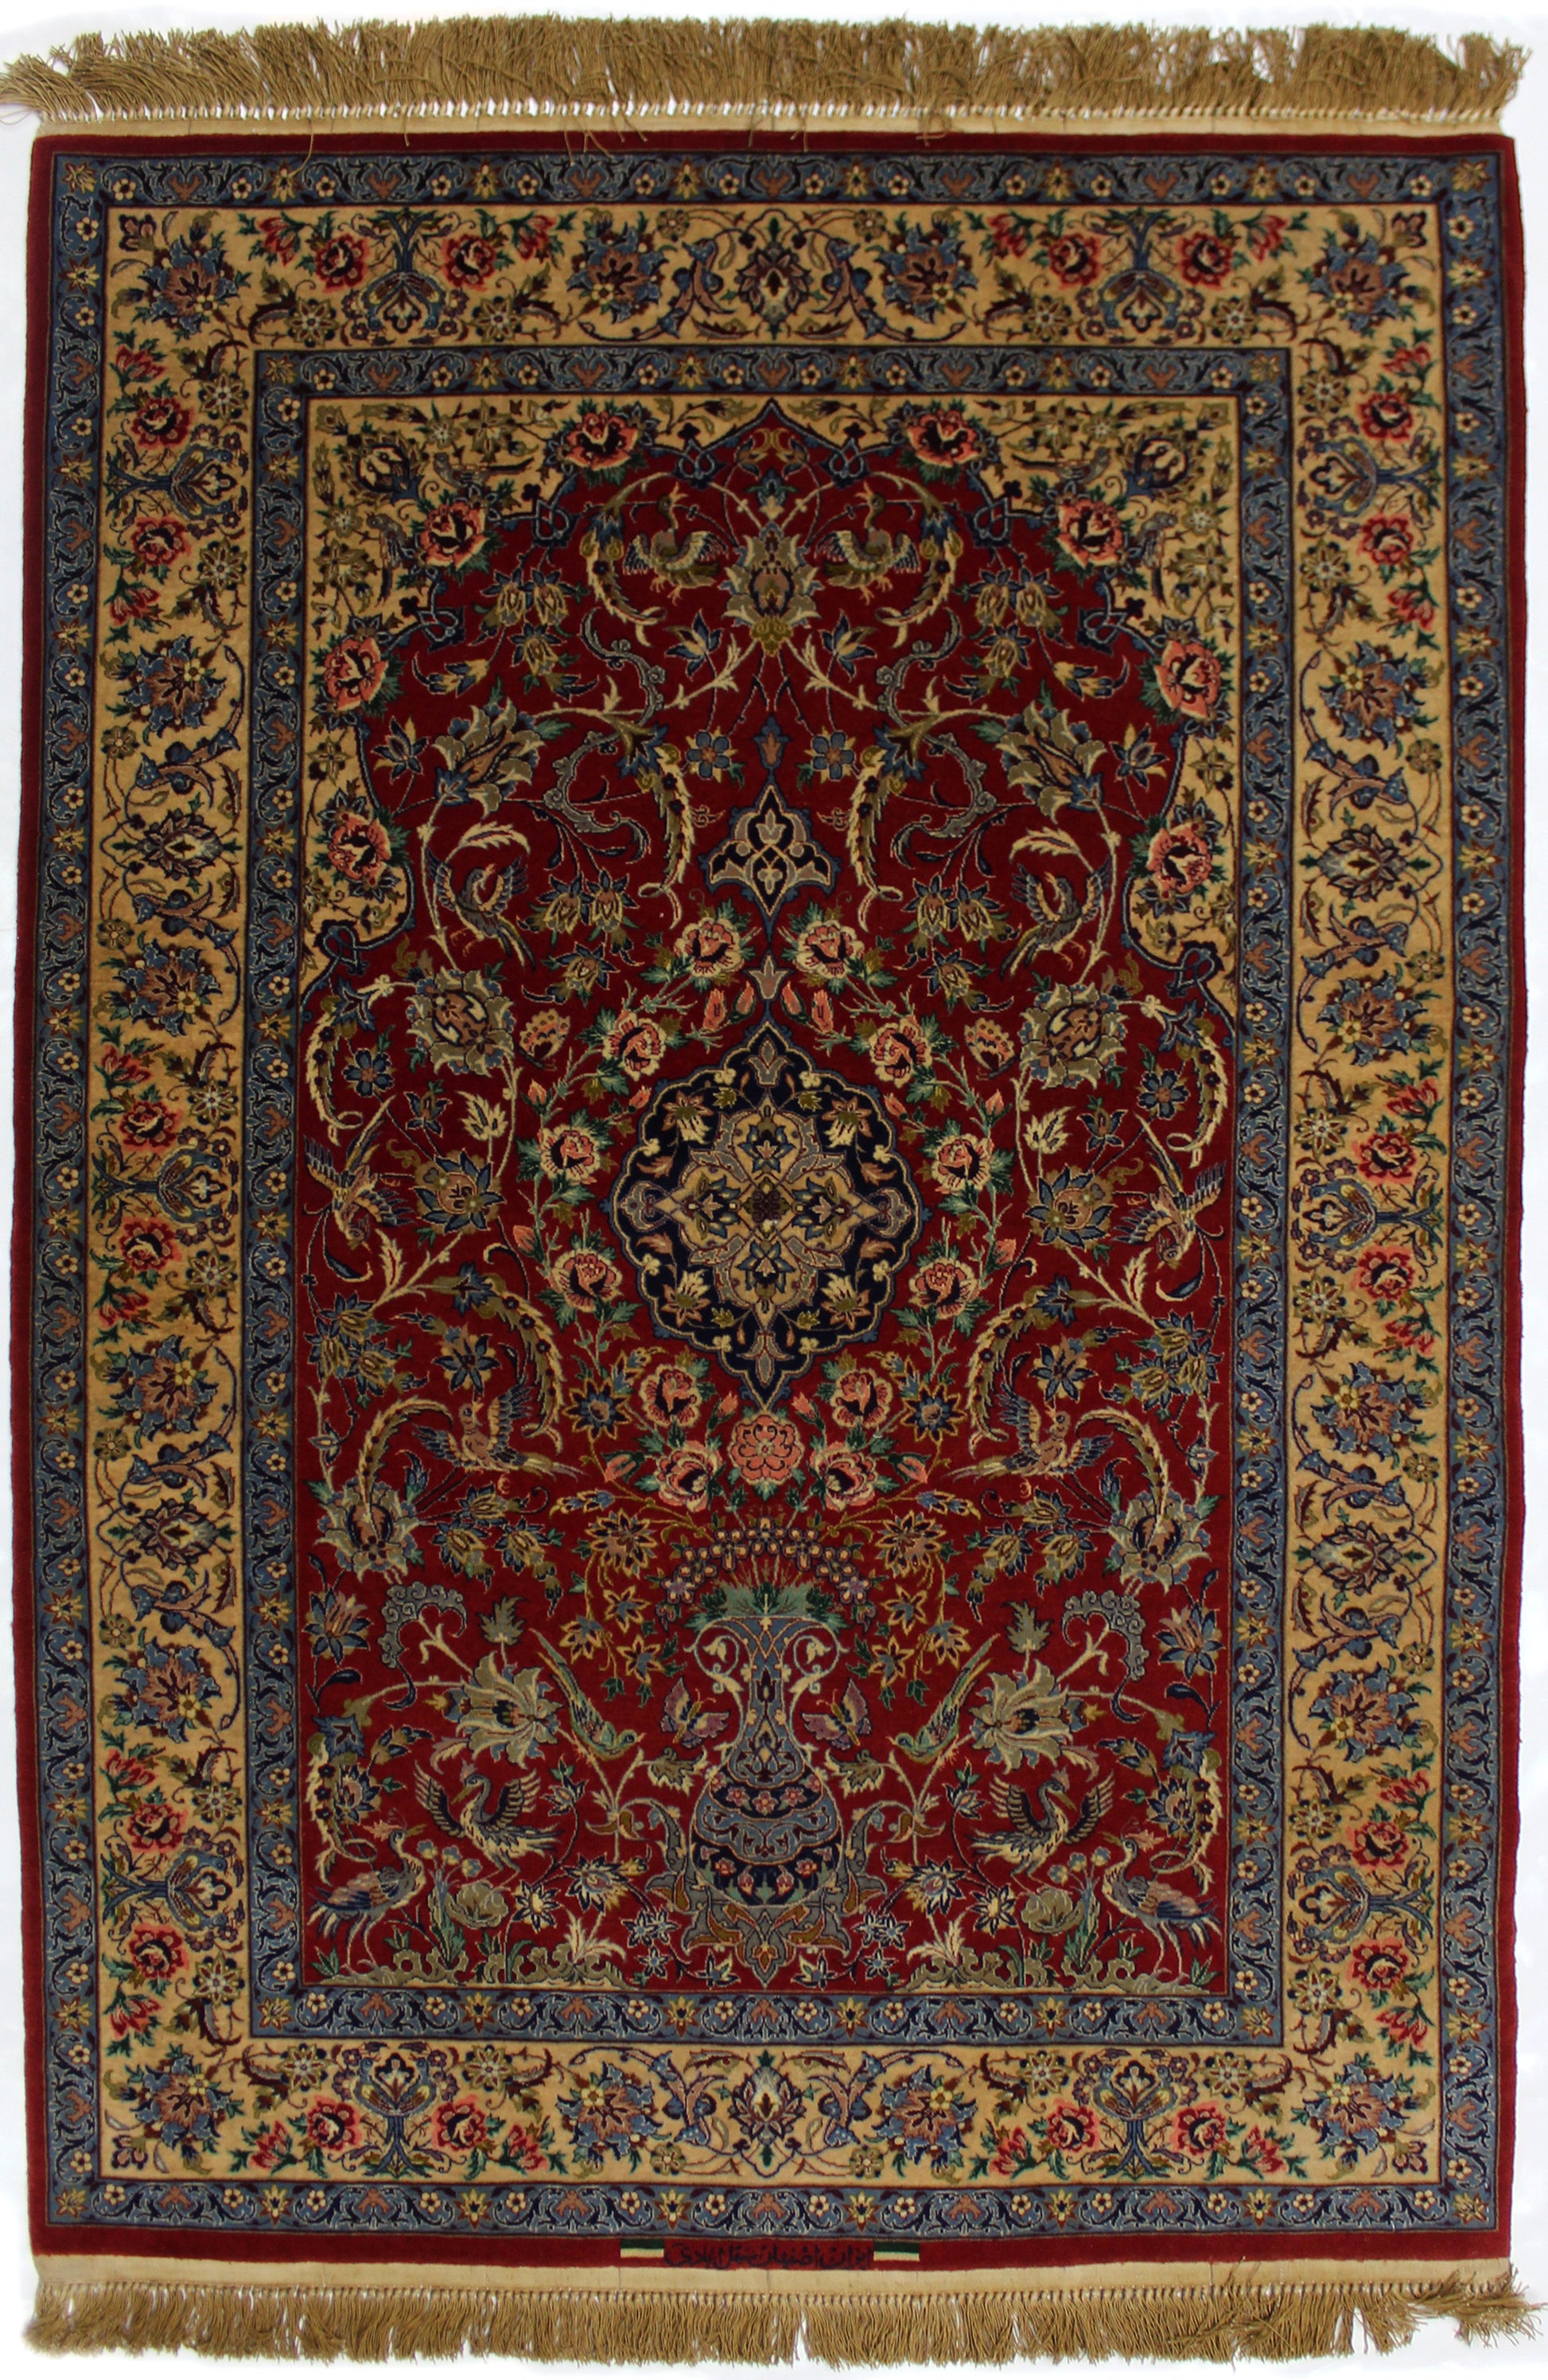 Isfahan Area Rug 155cm x 104cm